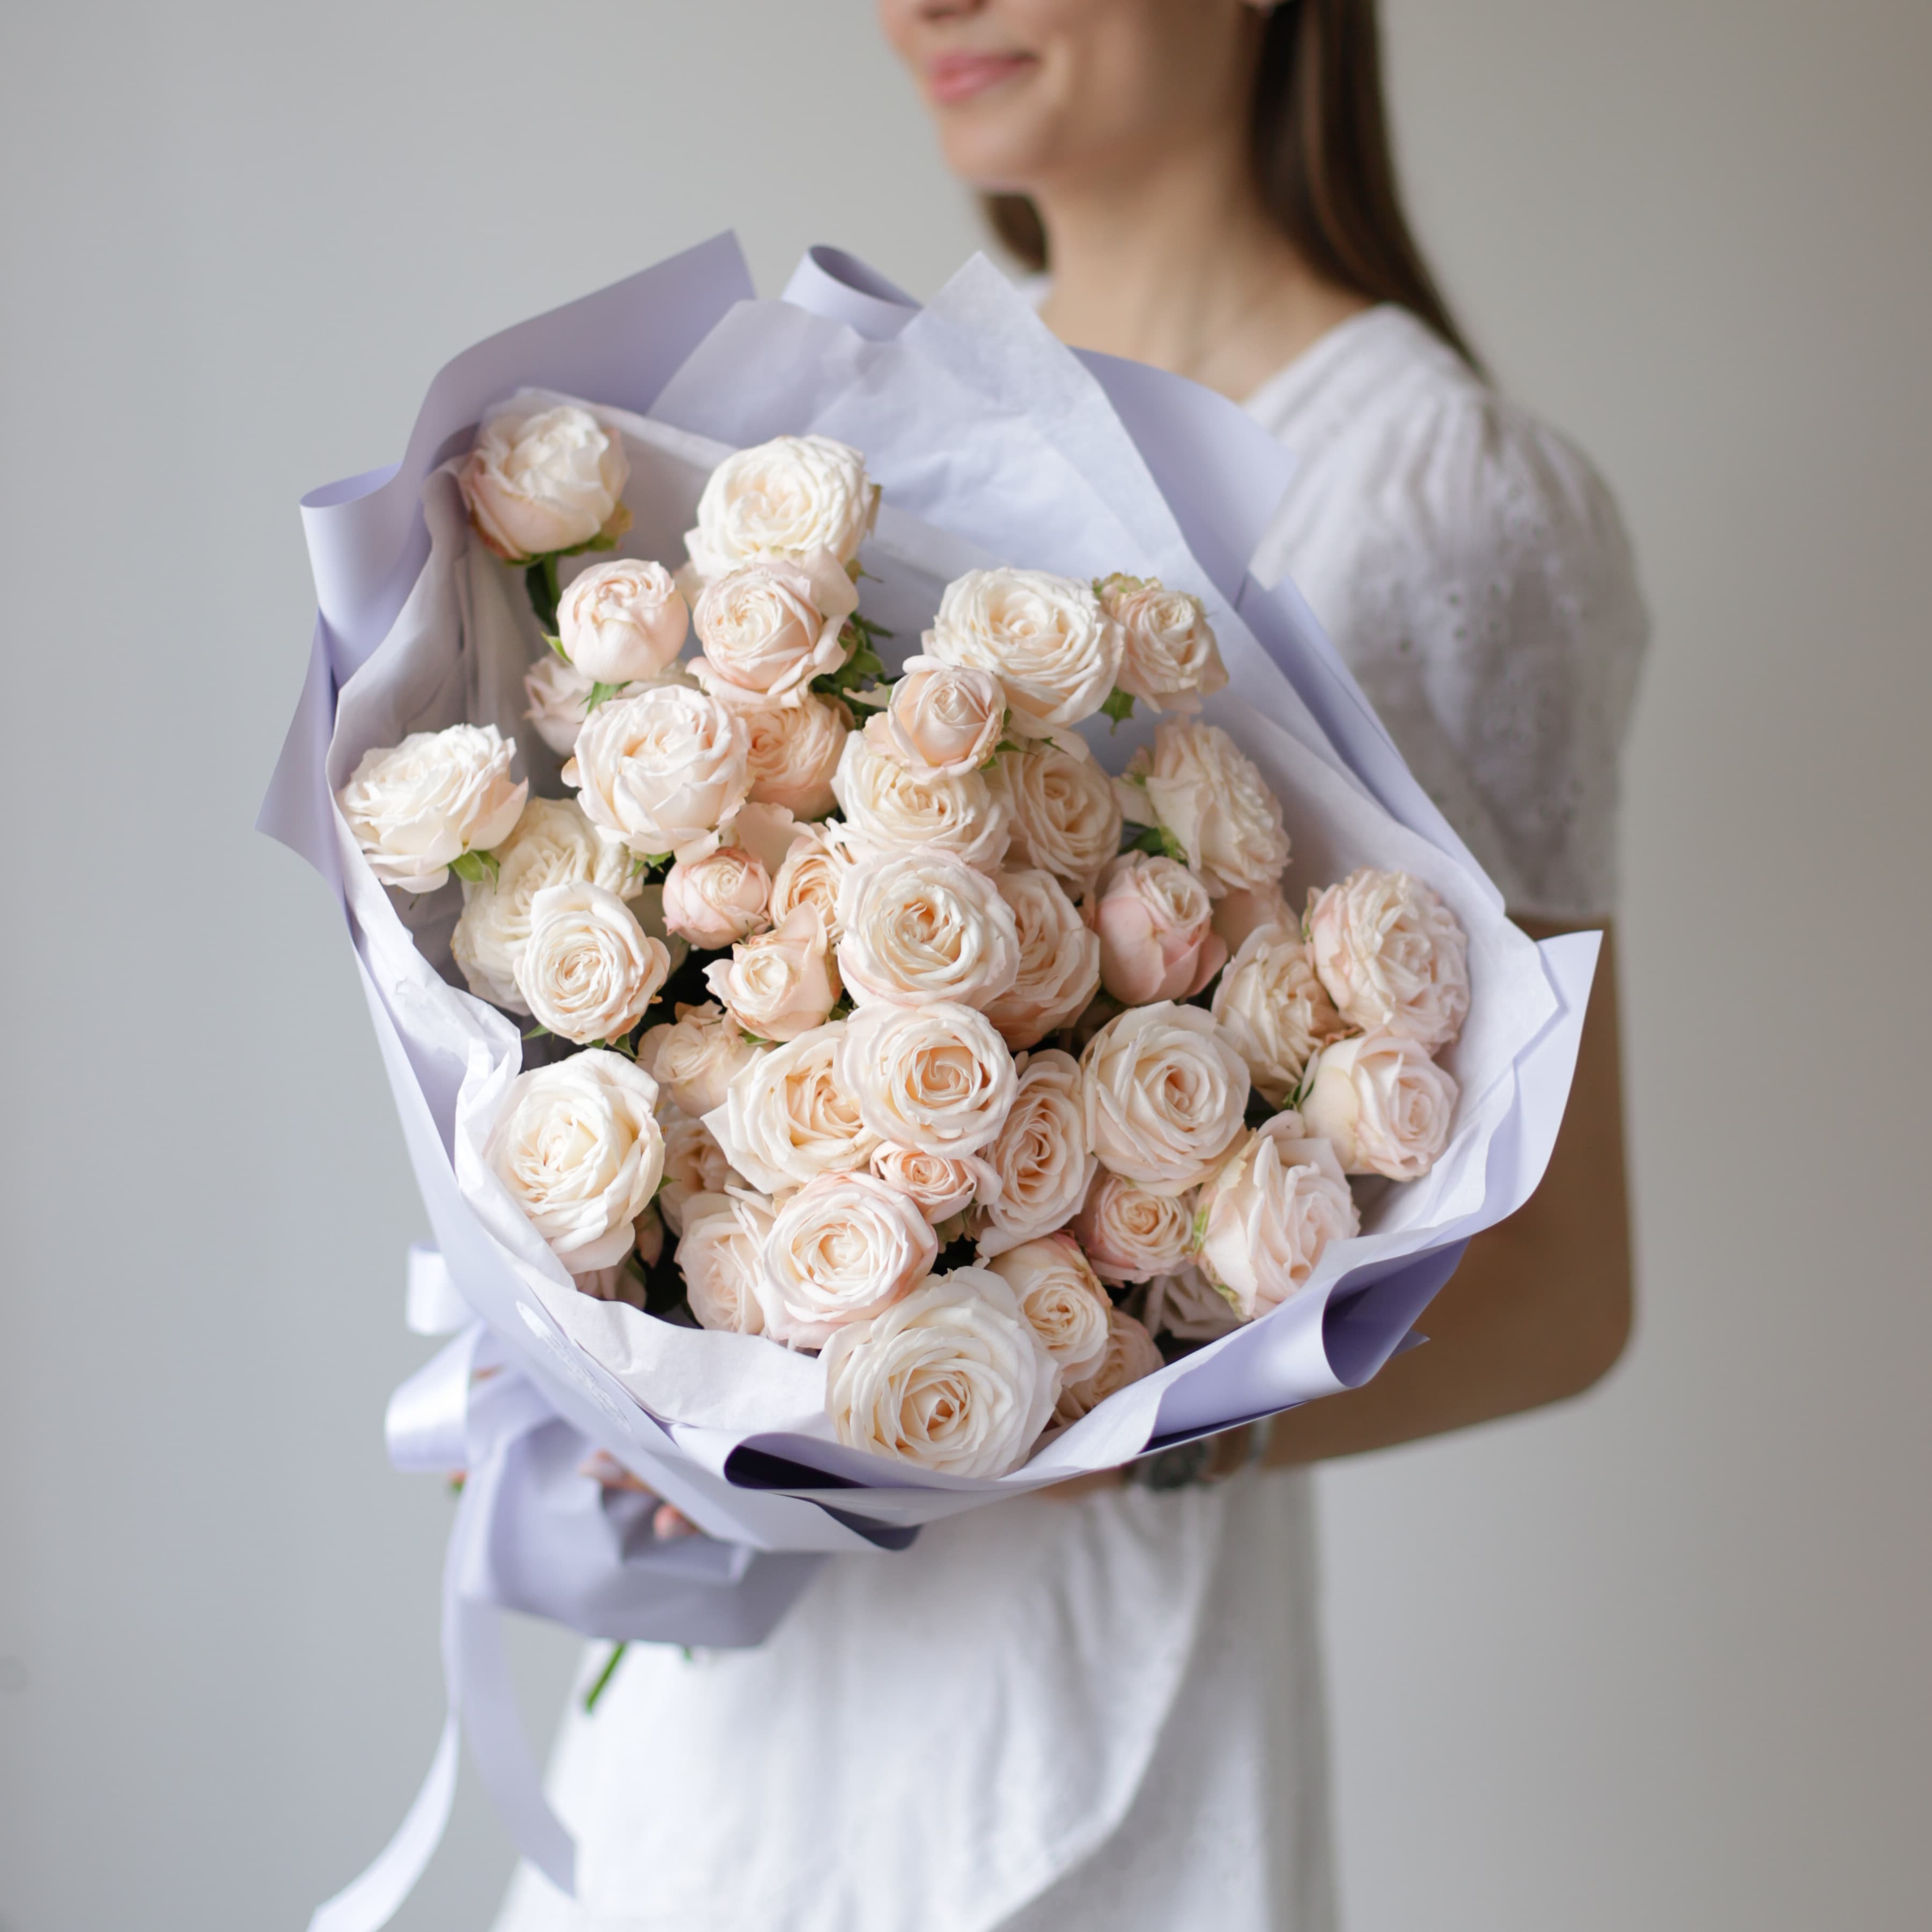 Кустовые пионовидные розы кремового оттенка в лавандовом оформлении №1494 - Фото 2